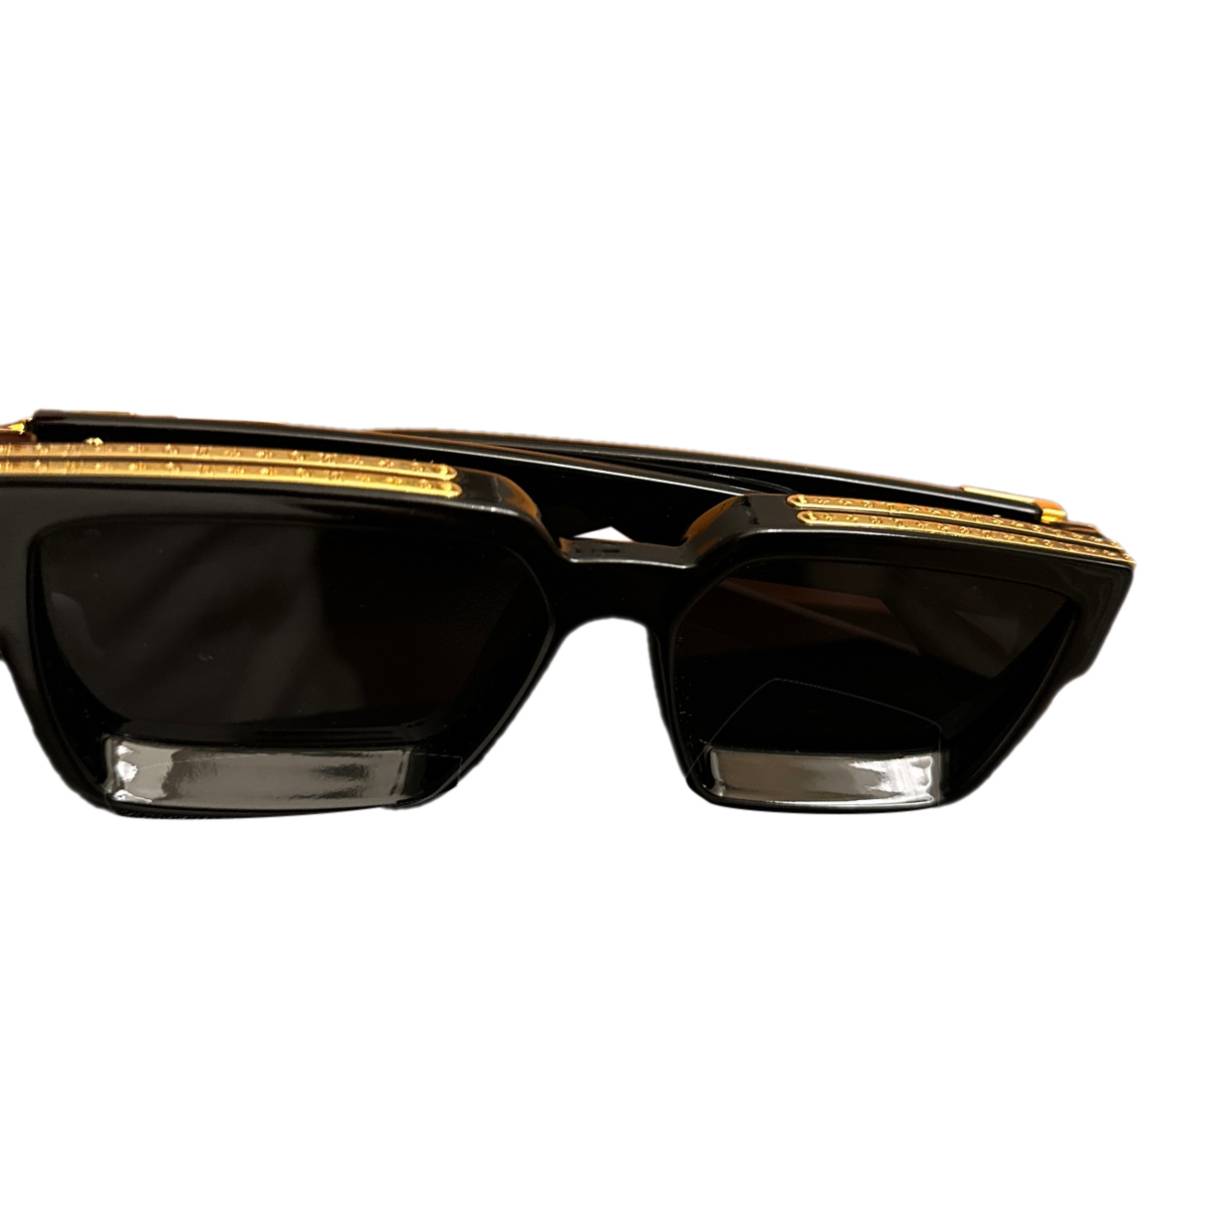 Pre-owned Louis Vuitton 1.1 Millionaires Sunglasses Black/orange